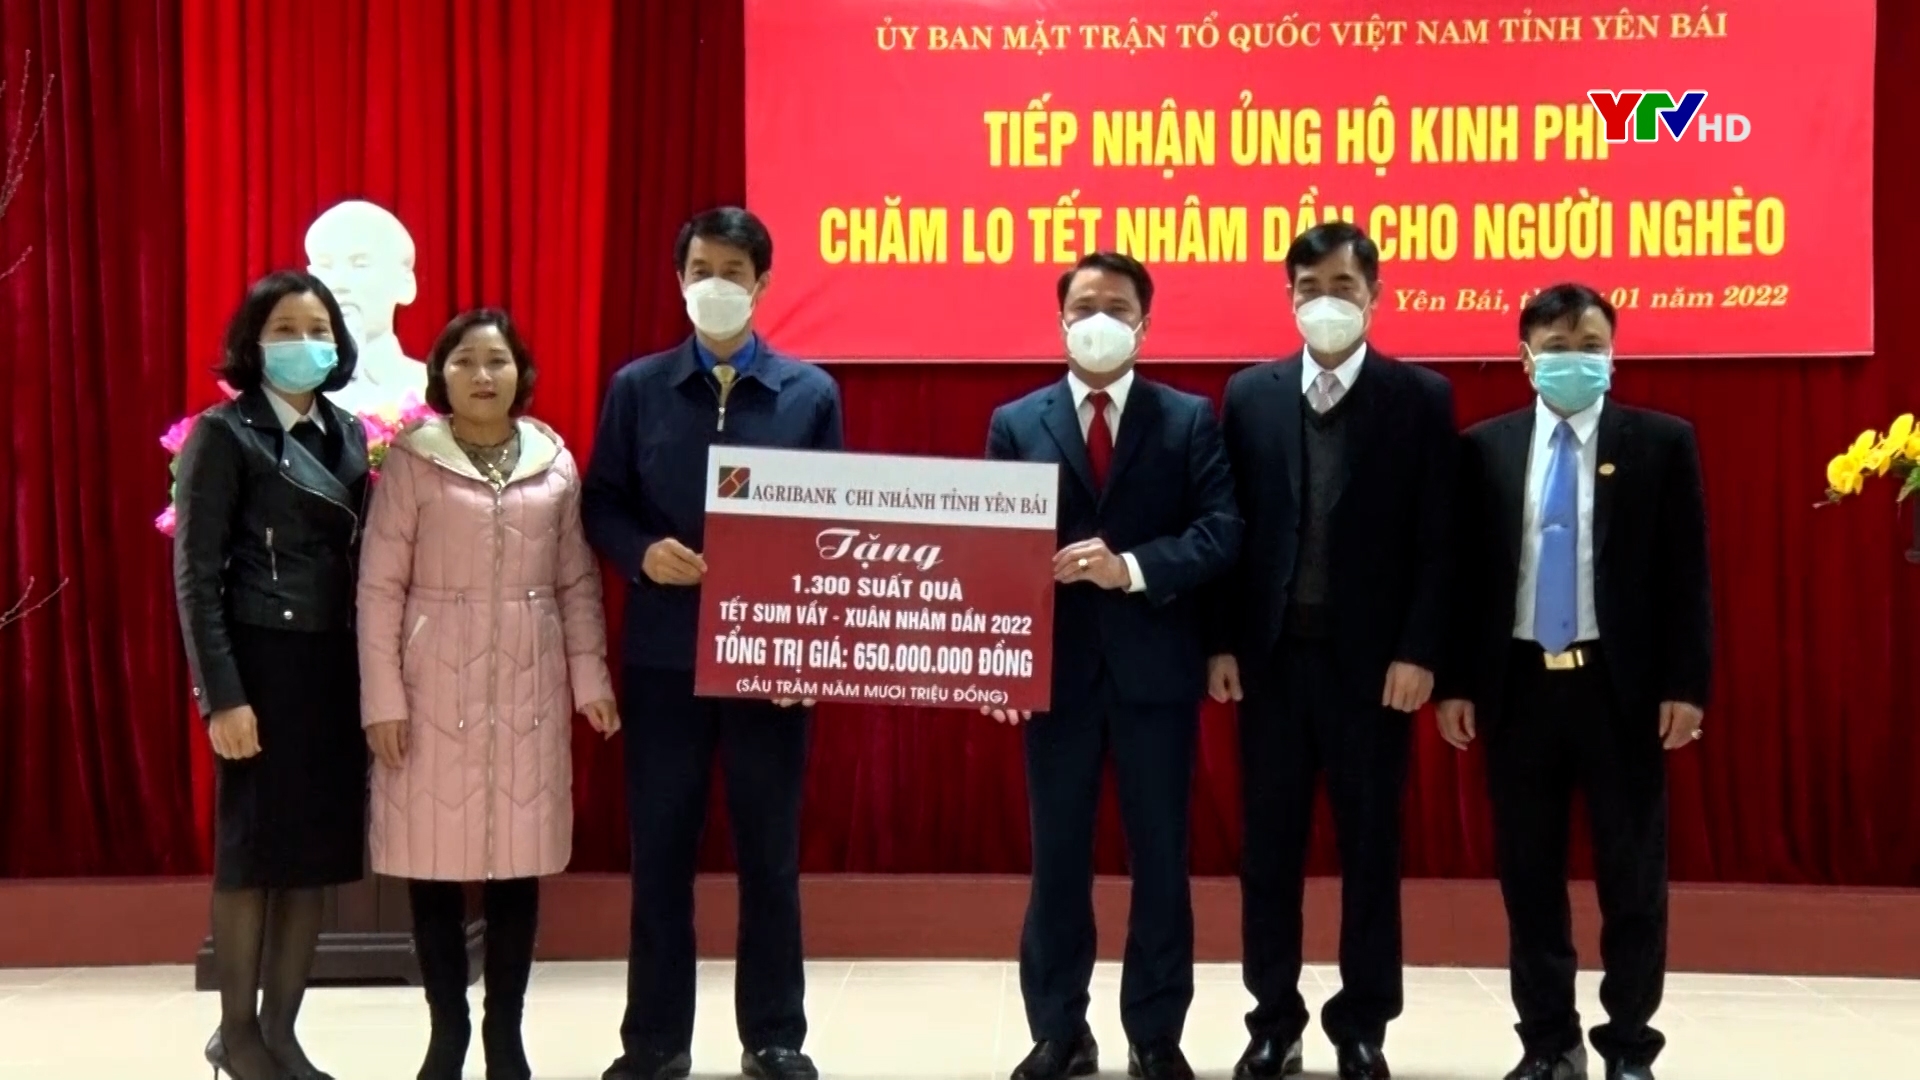 Uỷ ban MTTQ tỉnh tiếp nhận 1.300 suất quà Tết từ Agribank - Chi nhánh tỉnh Yên Bái trao tặng hộ nghèo